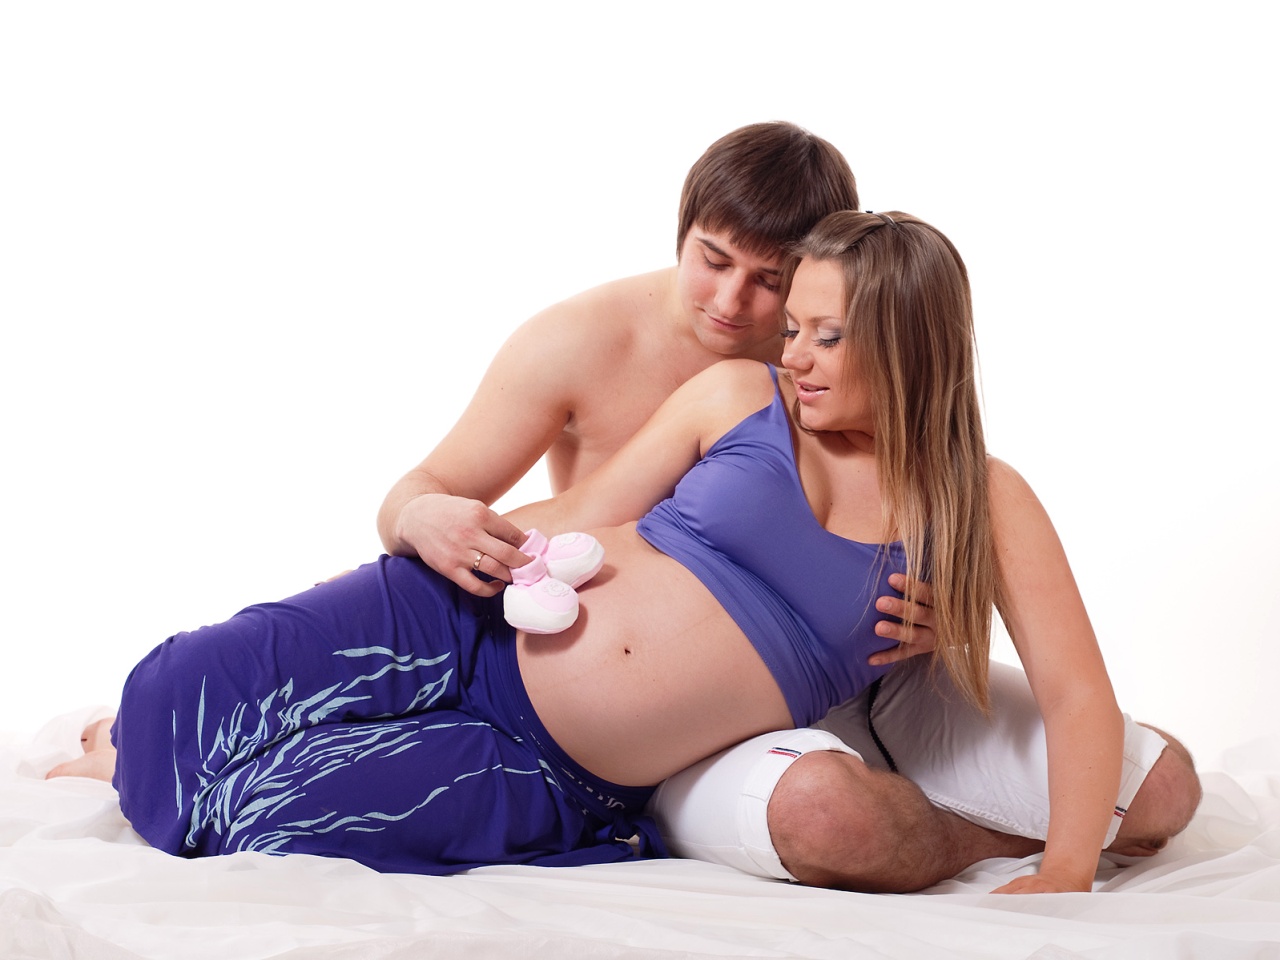 Какими позами можно заниматься сексом при беременности